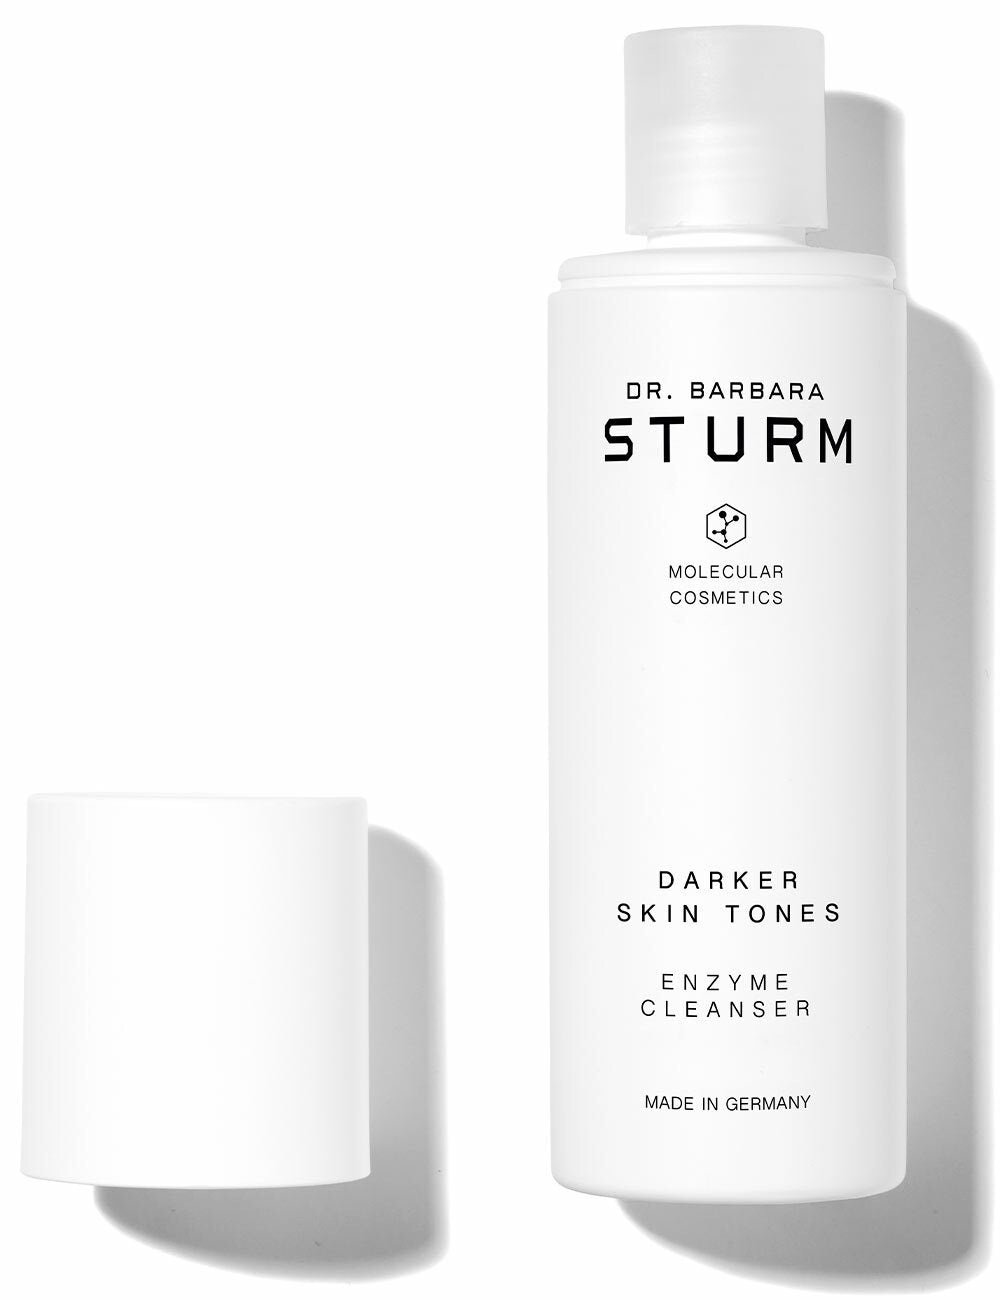 Darker Skin Tones Enzyme Cleanser